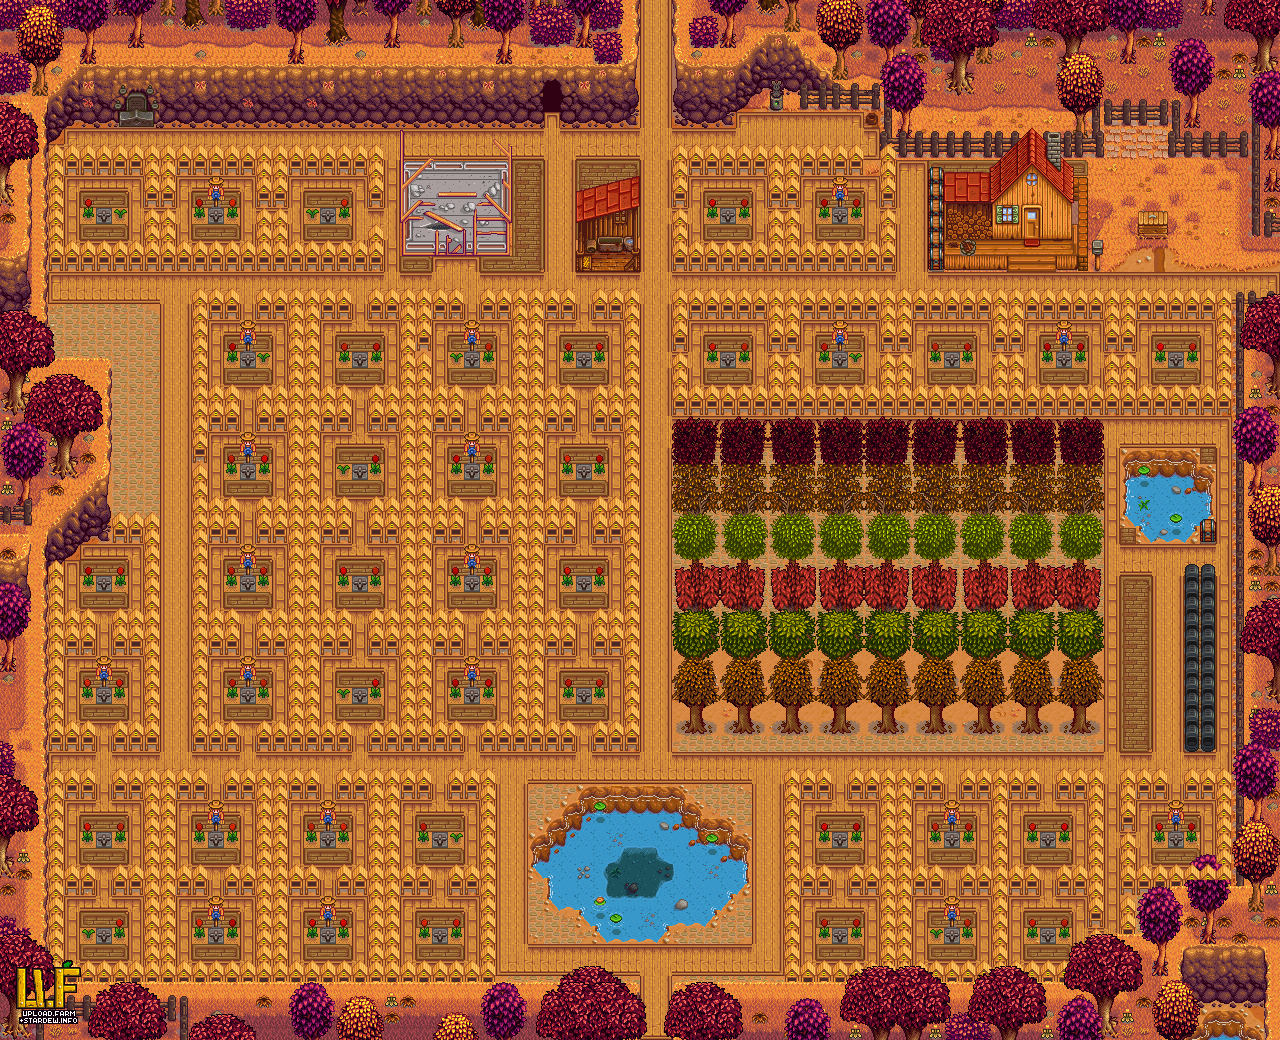 best stardew greenhouse layout